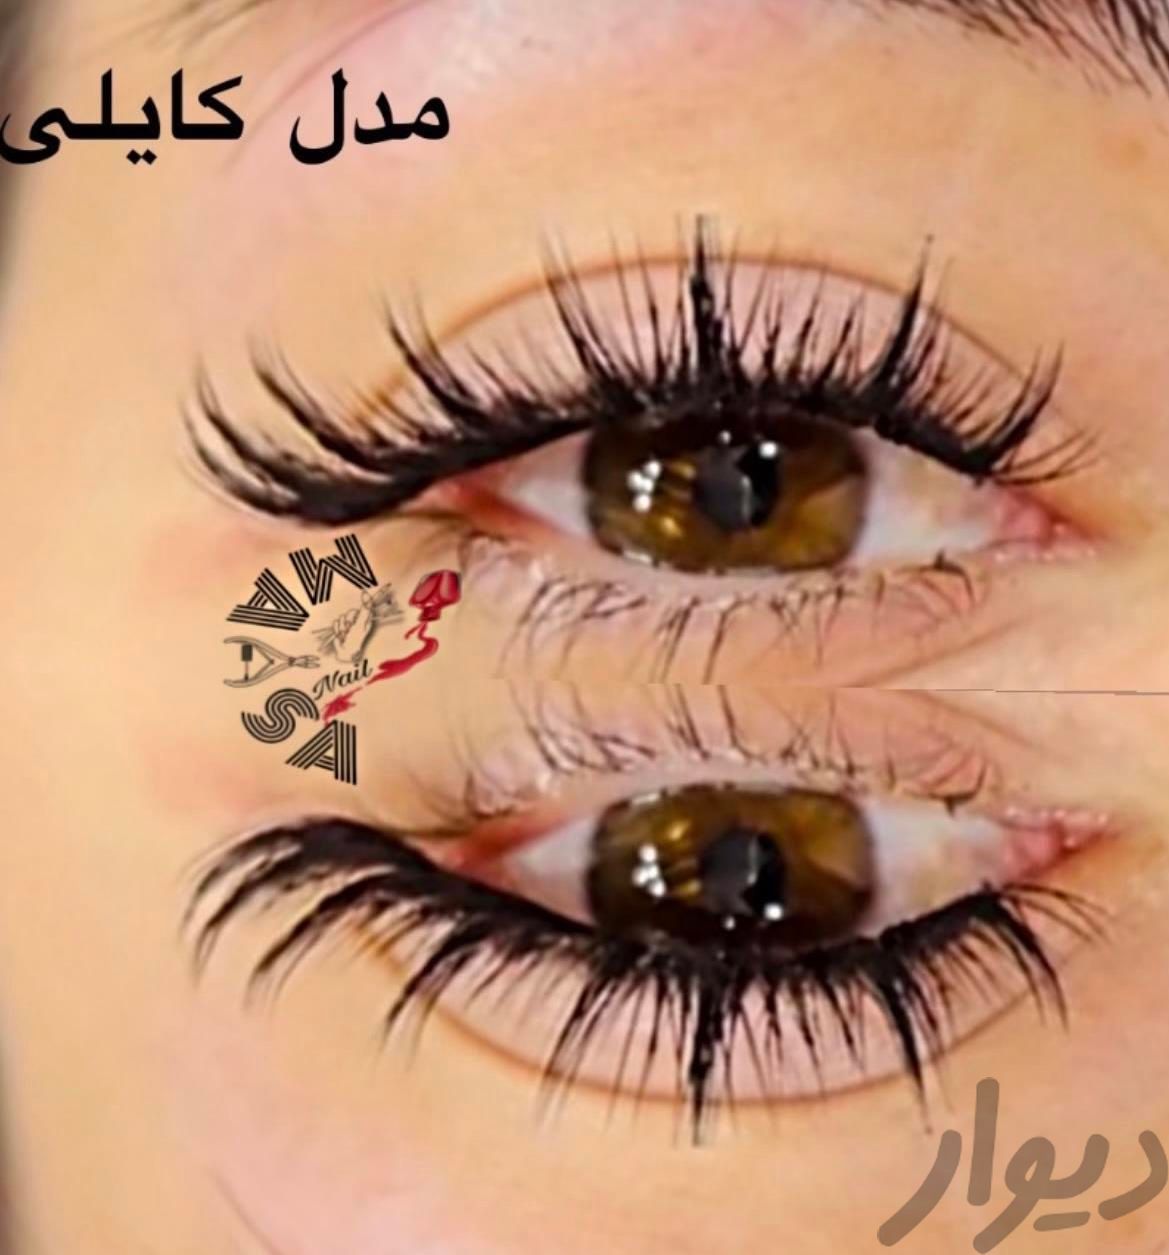 کاشتناخن مژه بمناسبت روز دختربمدت ۱۰روز|خدمات آرایشگری و زیبایی|تهران, مشیریه|دیوار